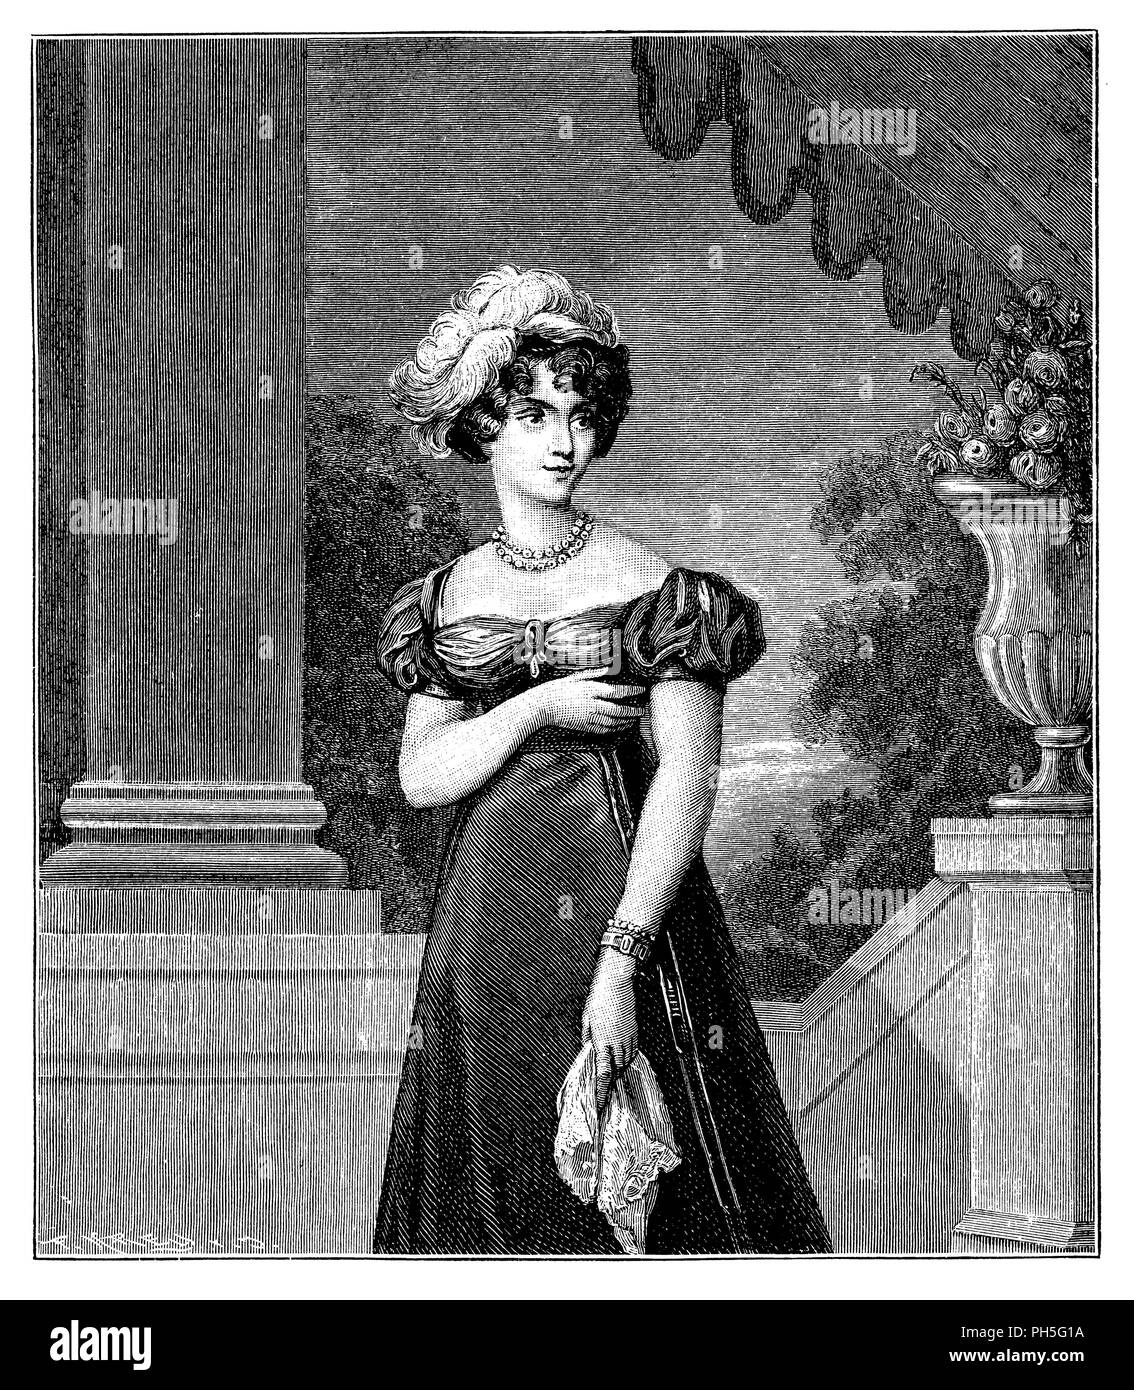 Maria Karolina von Naples-Sicily (1798-1870), Herzogin von Berry. Durch Pauquet, durch Frilley, Pauquet; Frilley 1899 graviert Lackiert Stockfoto